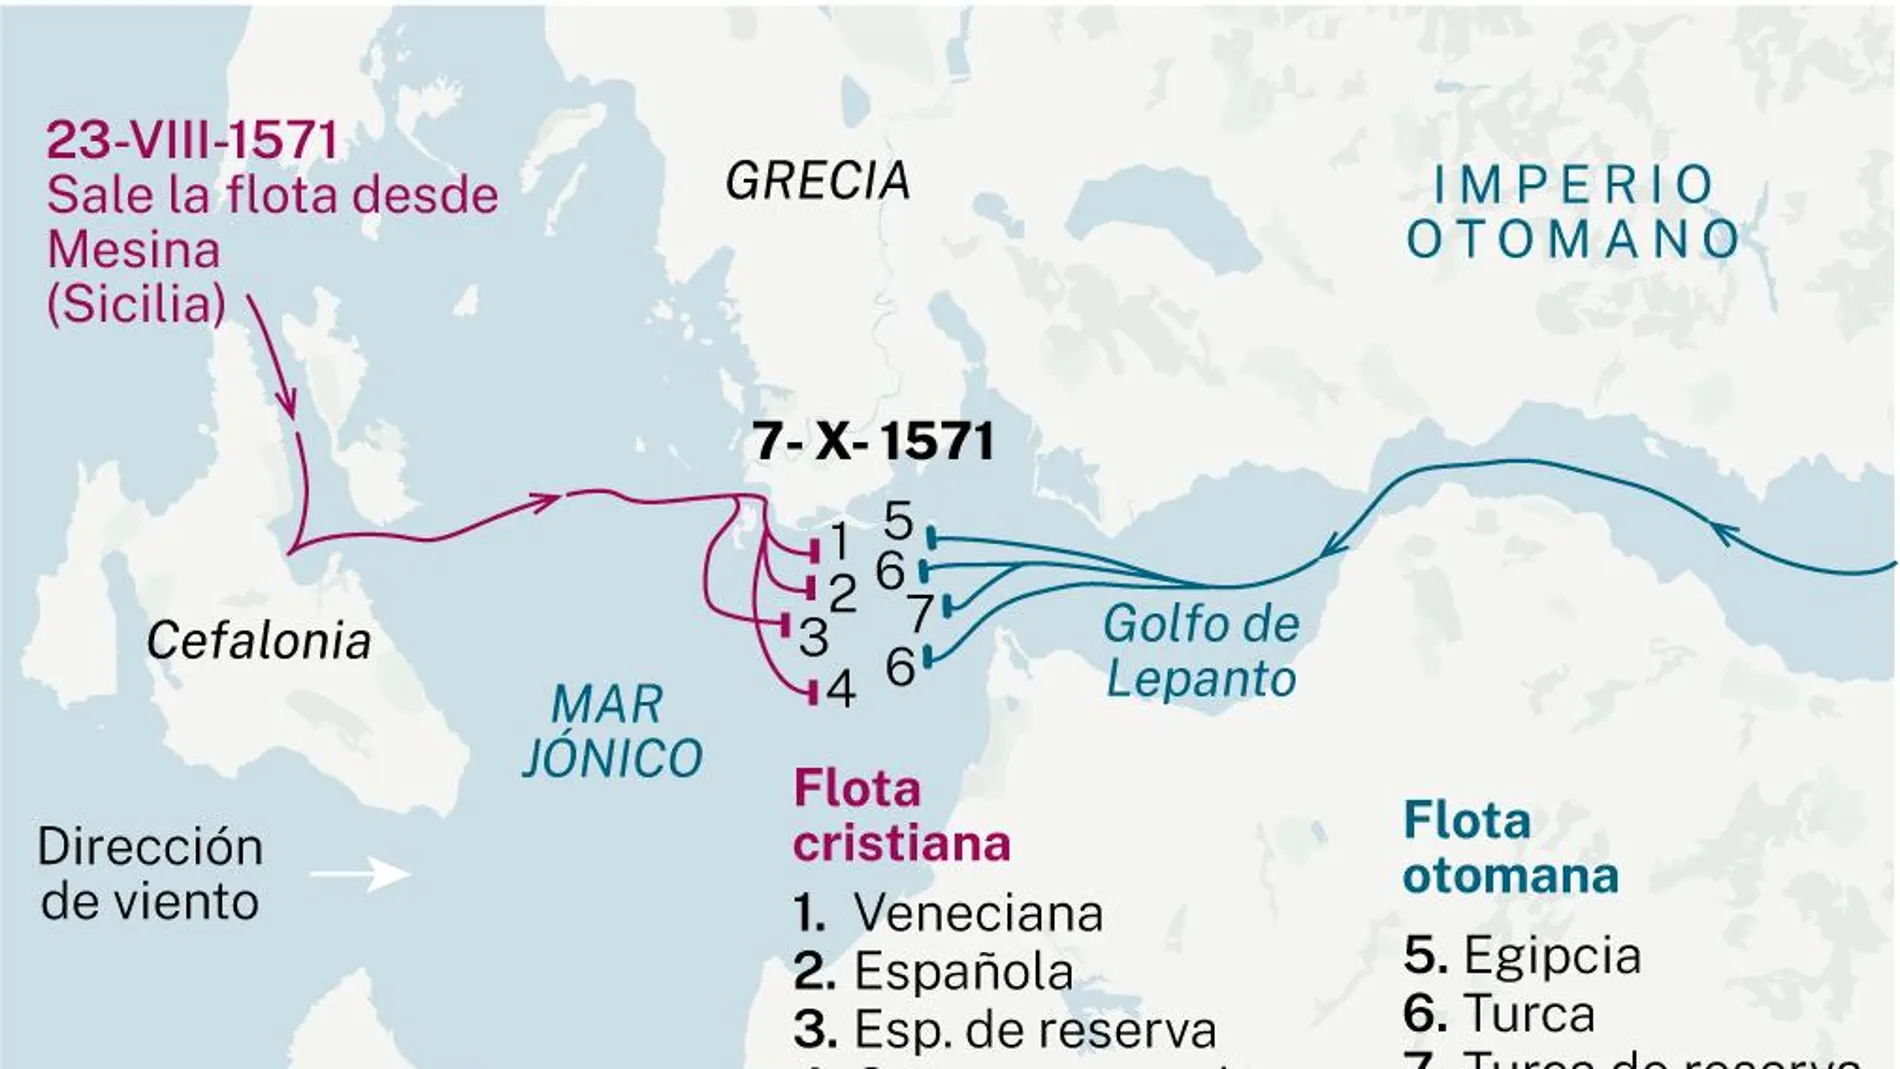 Mapa de la posición de las naves en la Batalla de Lepanto